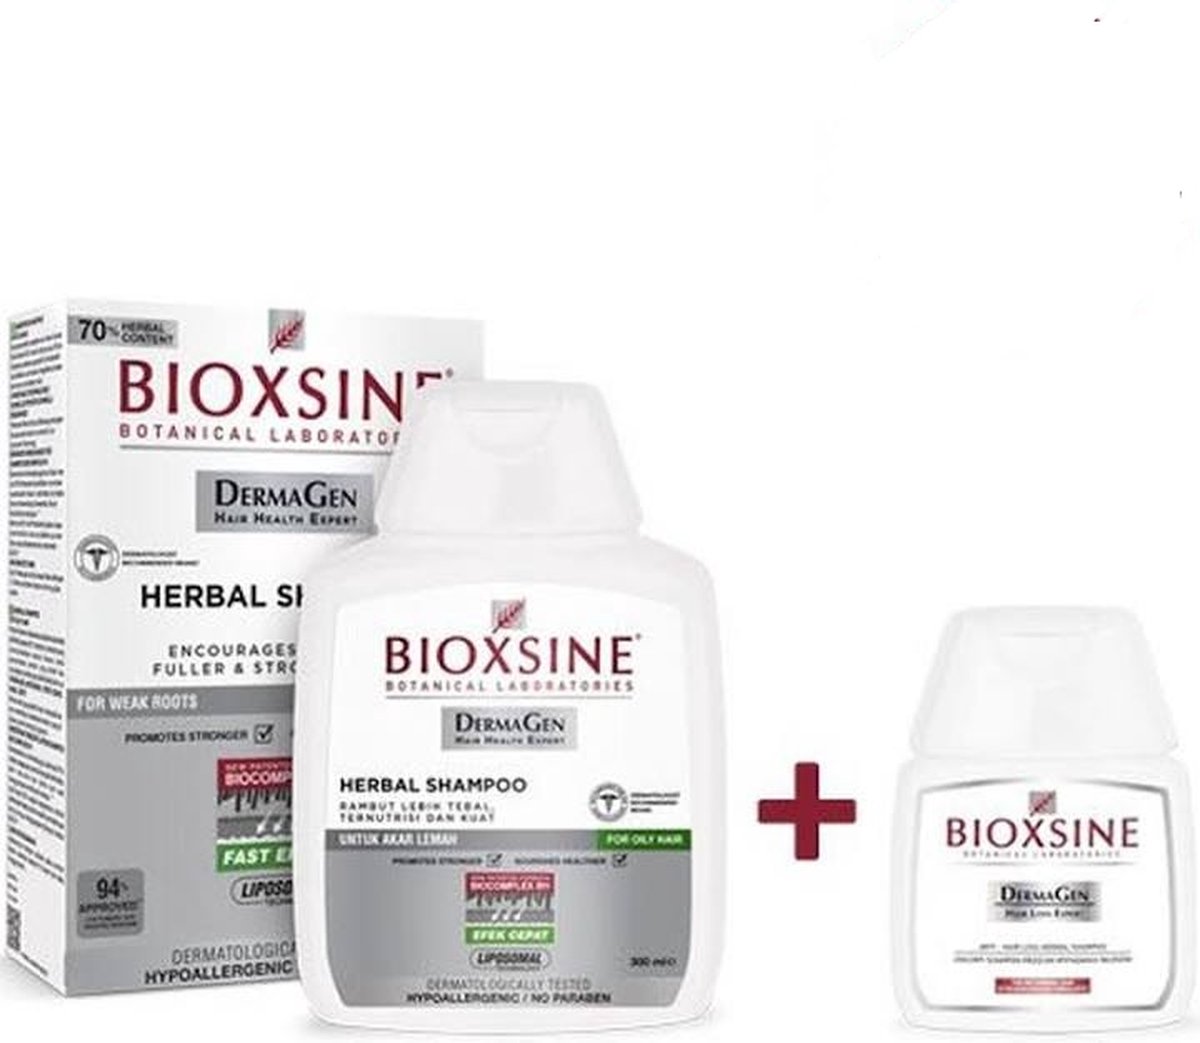 Bioxsine - Dermagen Shampoo voor Haaruitval 300 ml + 100 ml Travel Size Shampoo voor Droog/Normaal Haar - Herbal shampoo-Bio shampoo-bioxsine